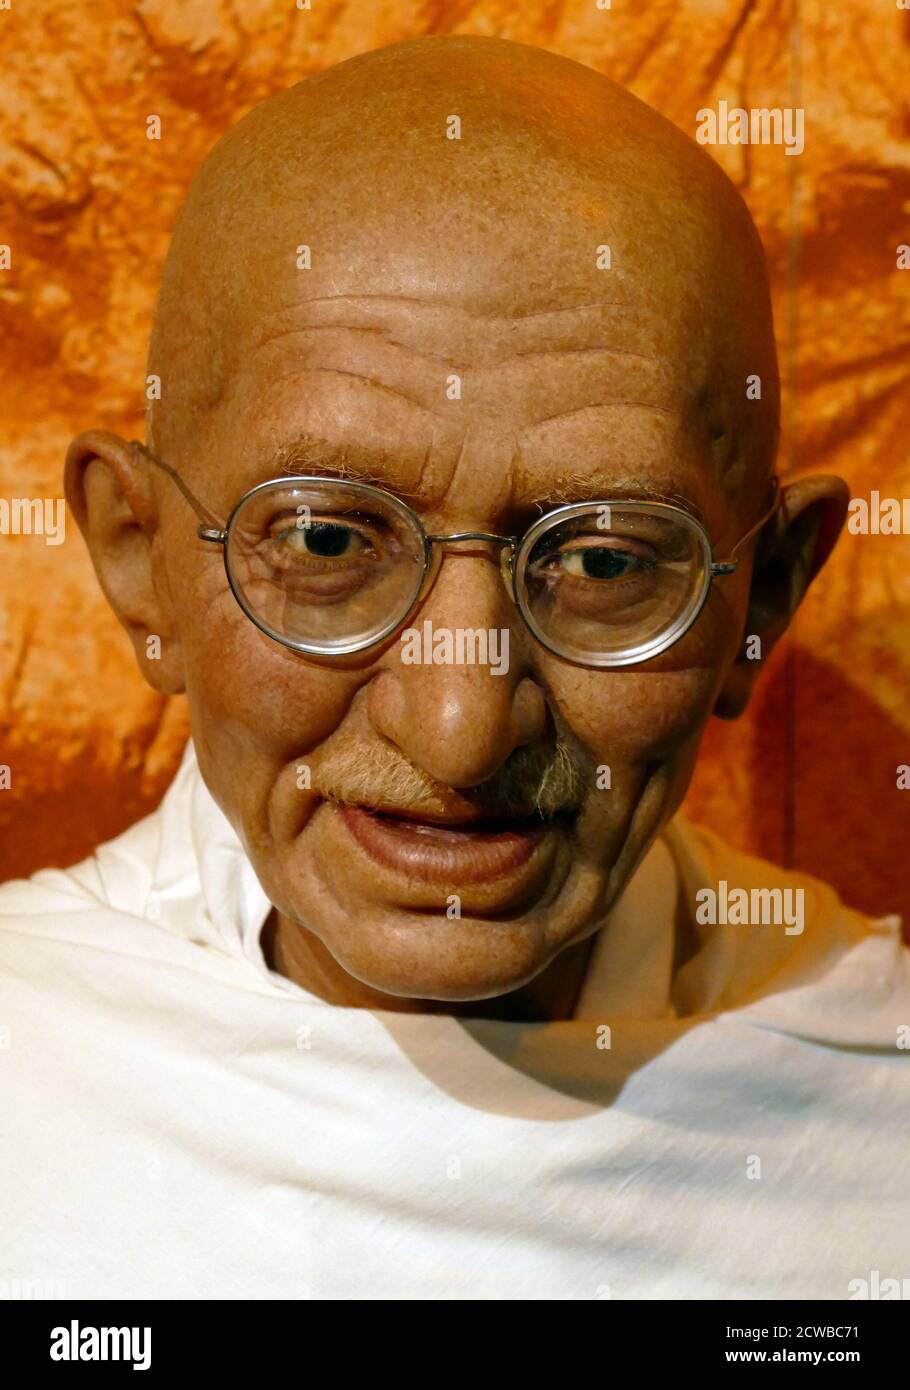 Estatua de cera que representa a Mahatma Gandhi (1869 - 1948); abogado indio, nacionalista anti-colonial y político-eticista, que emplearon la resistencia no violenta para liderar la exitosa campaña por la independencia de la India del dominio británico, y a su vez inspiró movimientos por los derechos civiles. Foto de stock